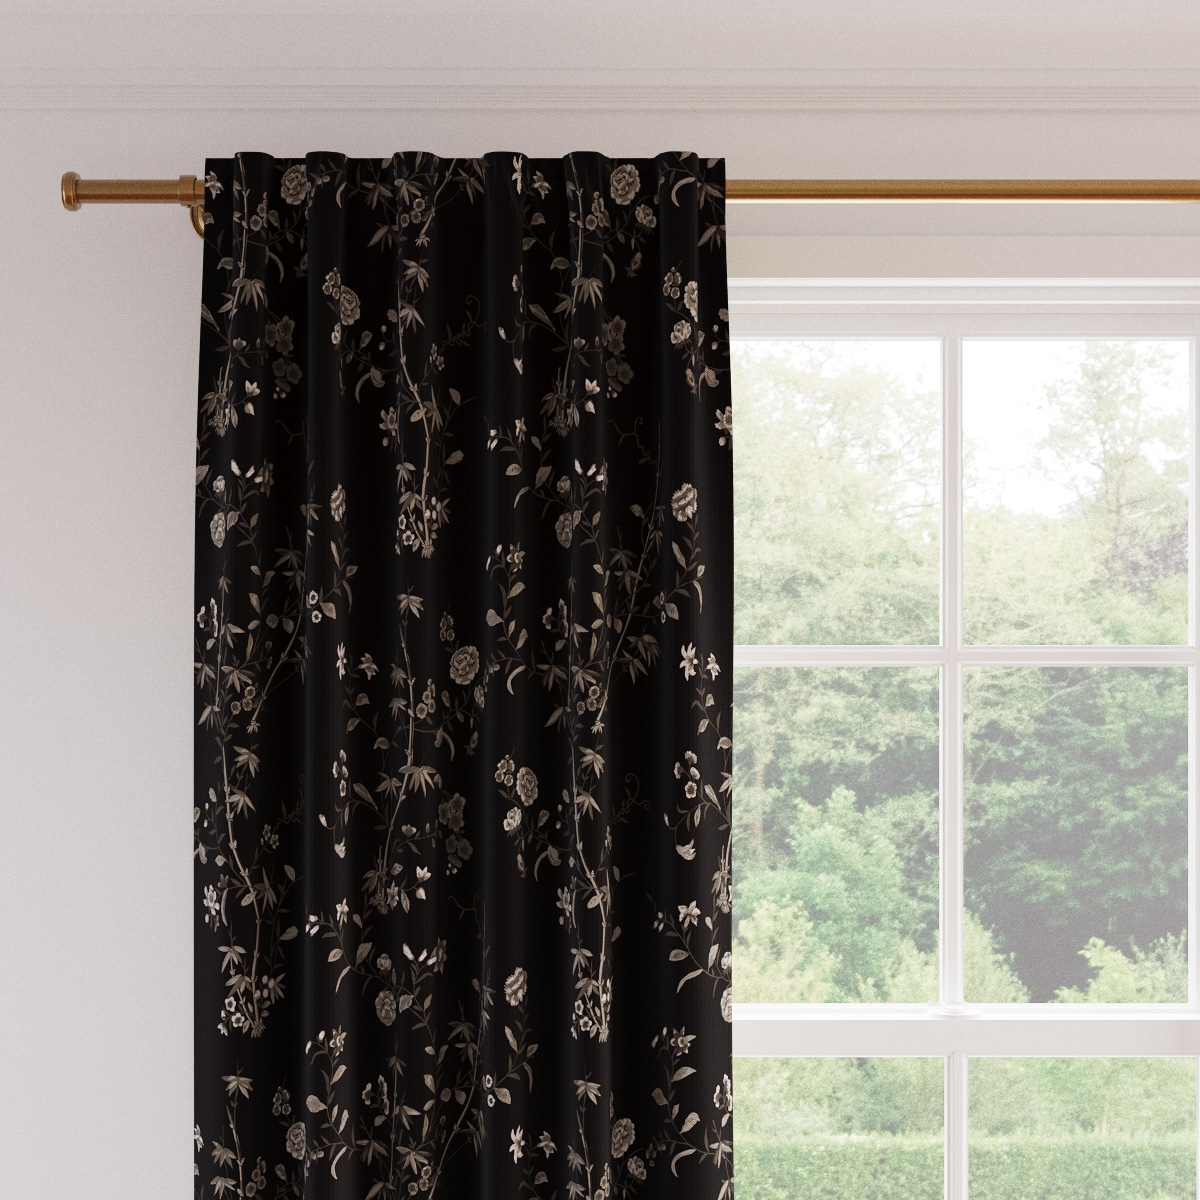 Printed Linen Curtain, Black Bamboo Garden, 50" x 96" - Image 1